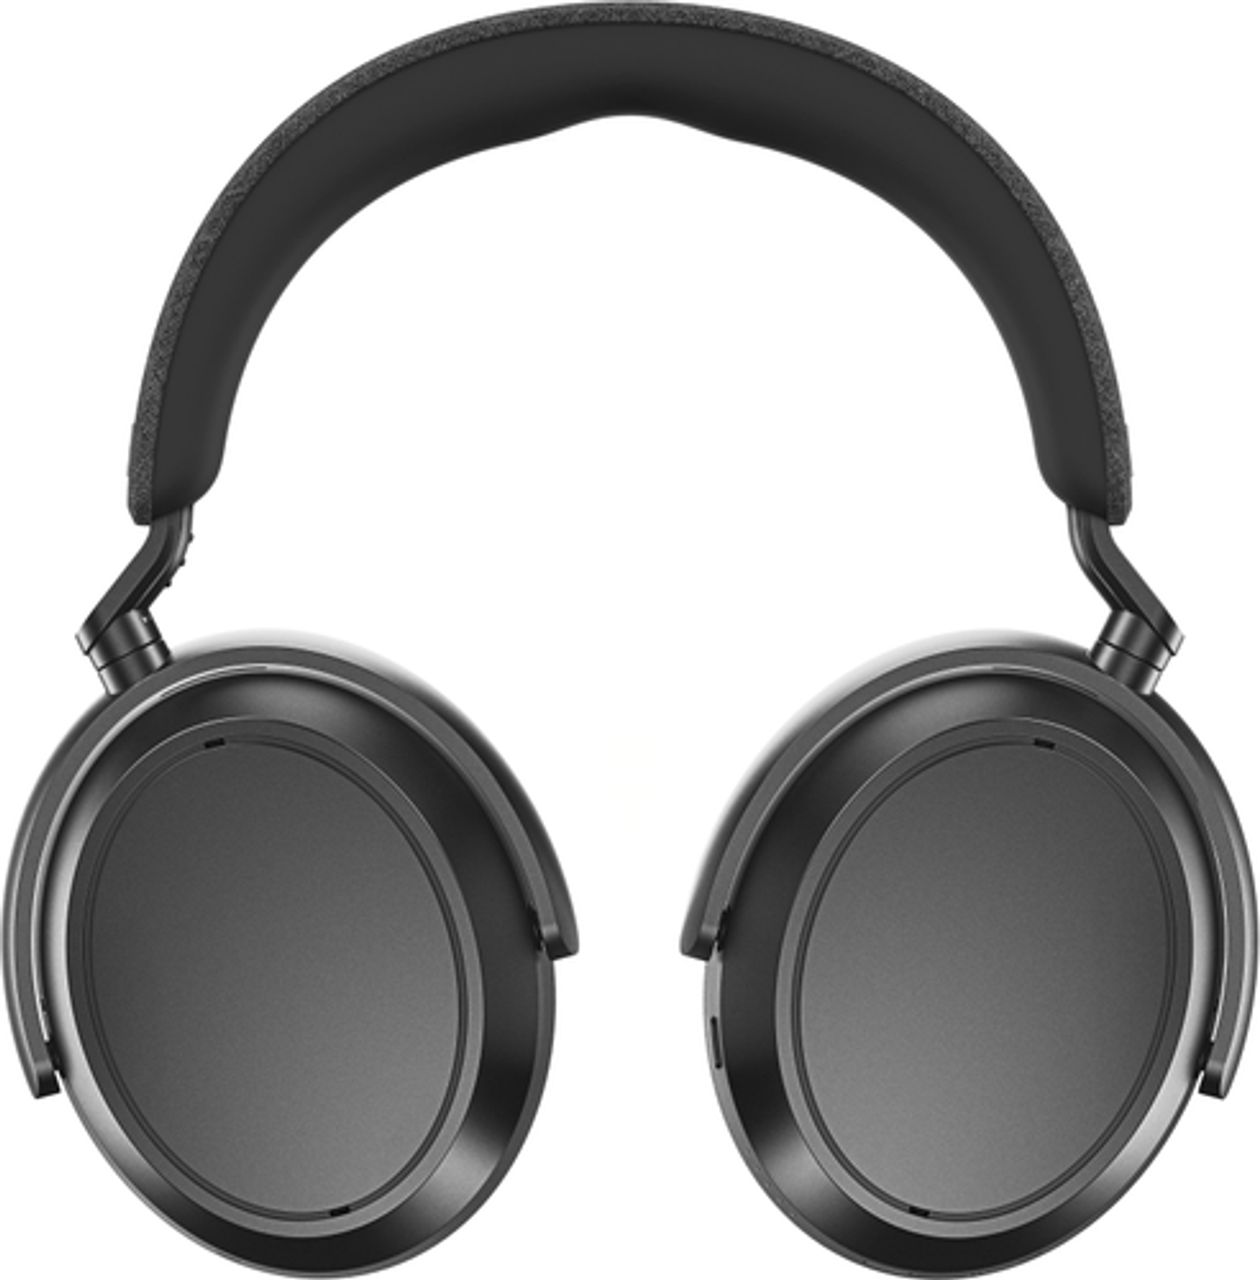 Sennheiser - Momentum 4 Wireless Adaptive Noise-Canceling Over-The-Ear Headphones - Graphite